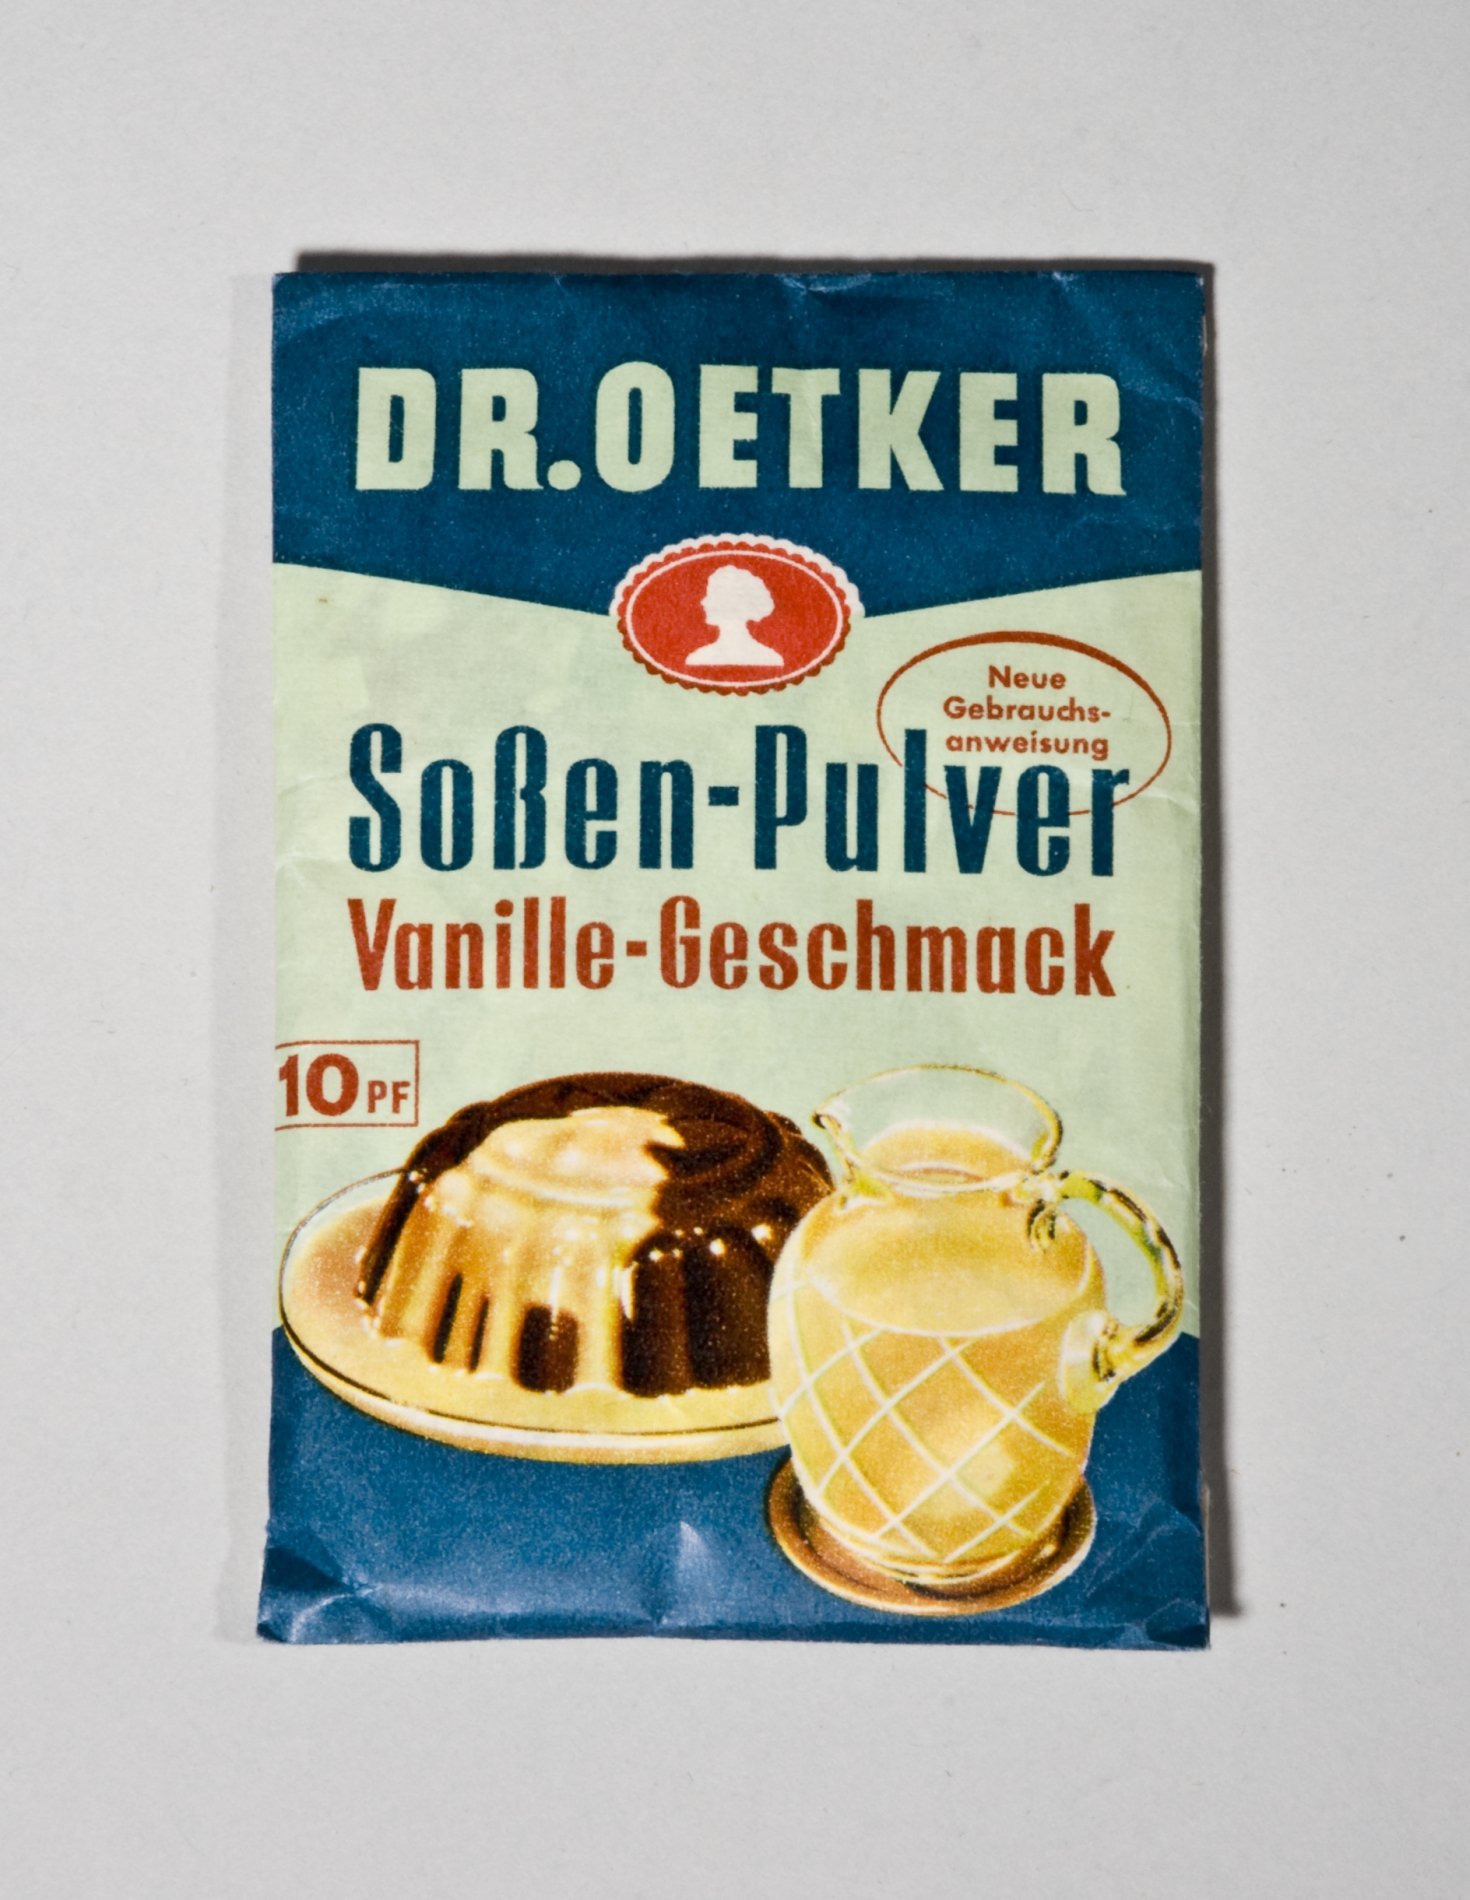 Päckchen "Soßen-Pulver Vanille-Geschmack" von "Dr.Oetker" (Stiftung Domäne Dahlem - Landgut und Museum, Weiternutzung nur mit Genehmigung des Museums CC BY-NC-SA)